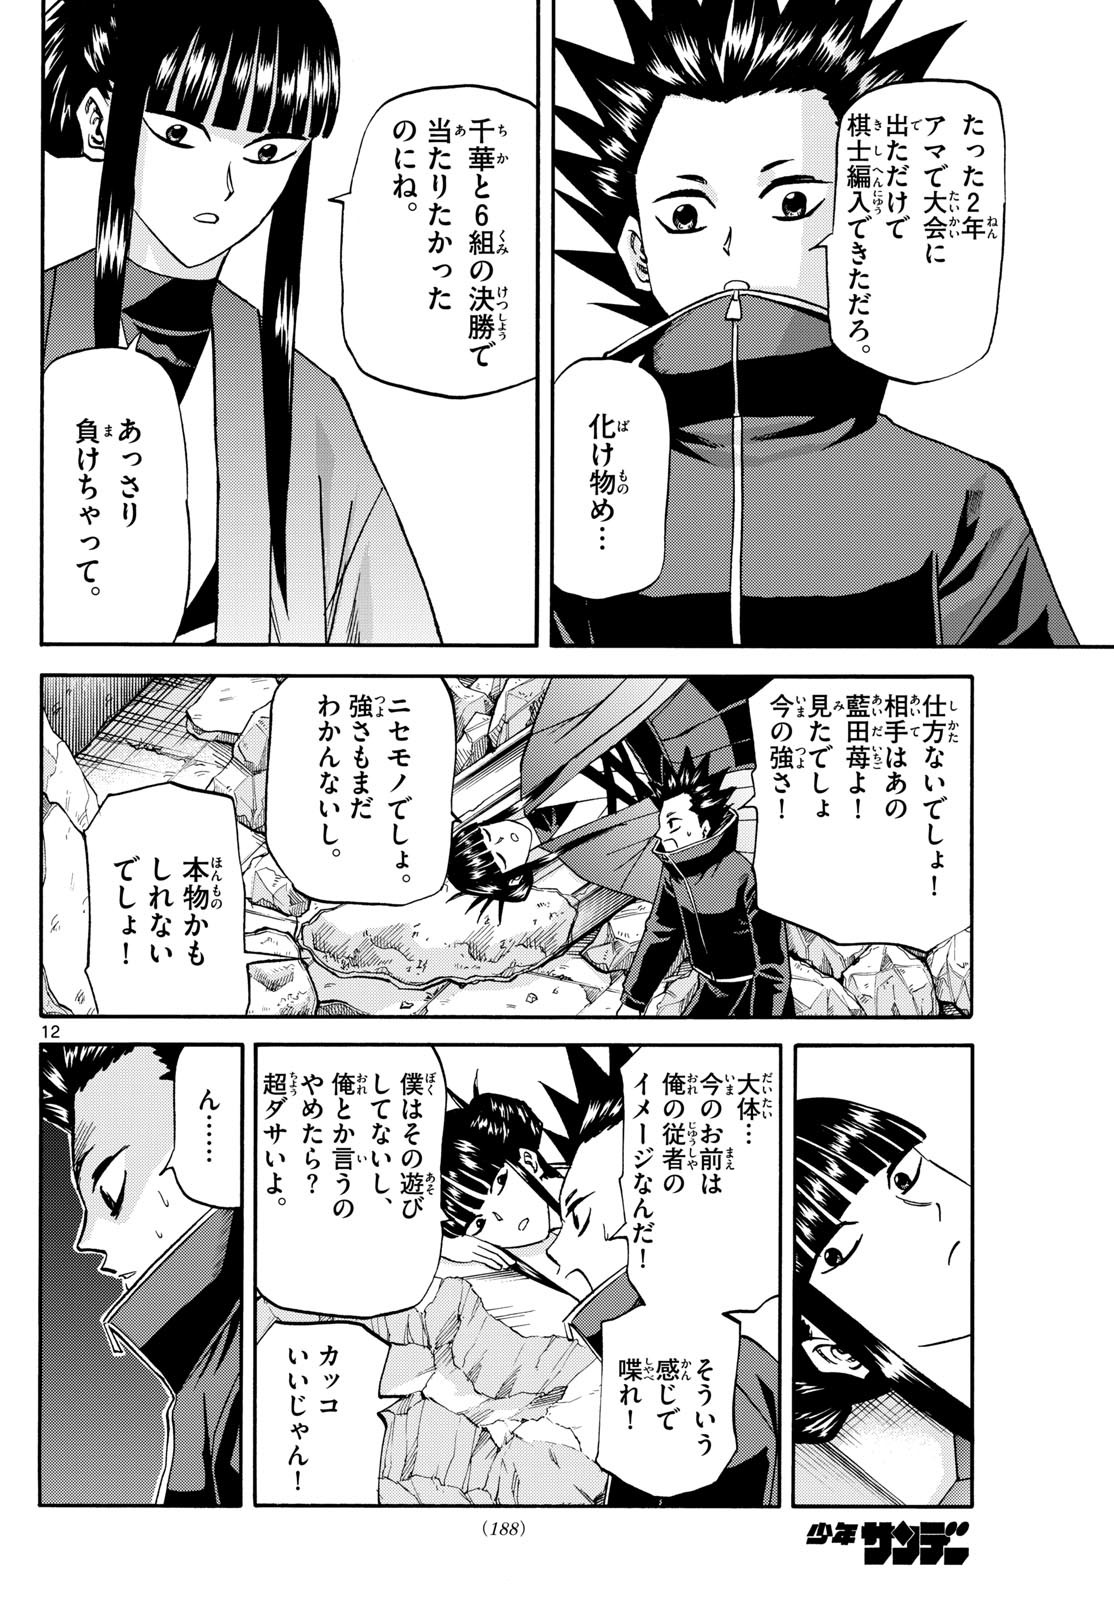 Ryu-to-Ichigo - Chapter 192 - Page 12